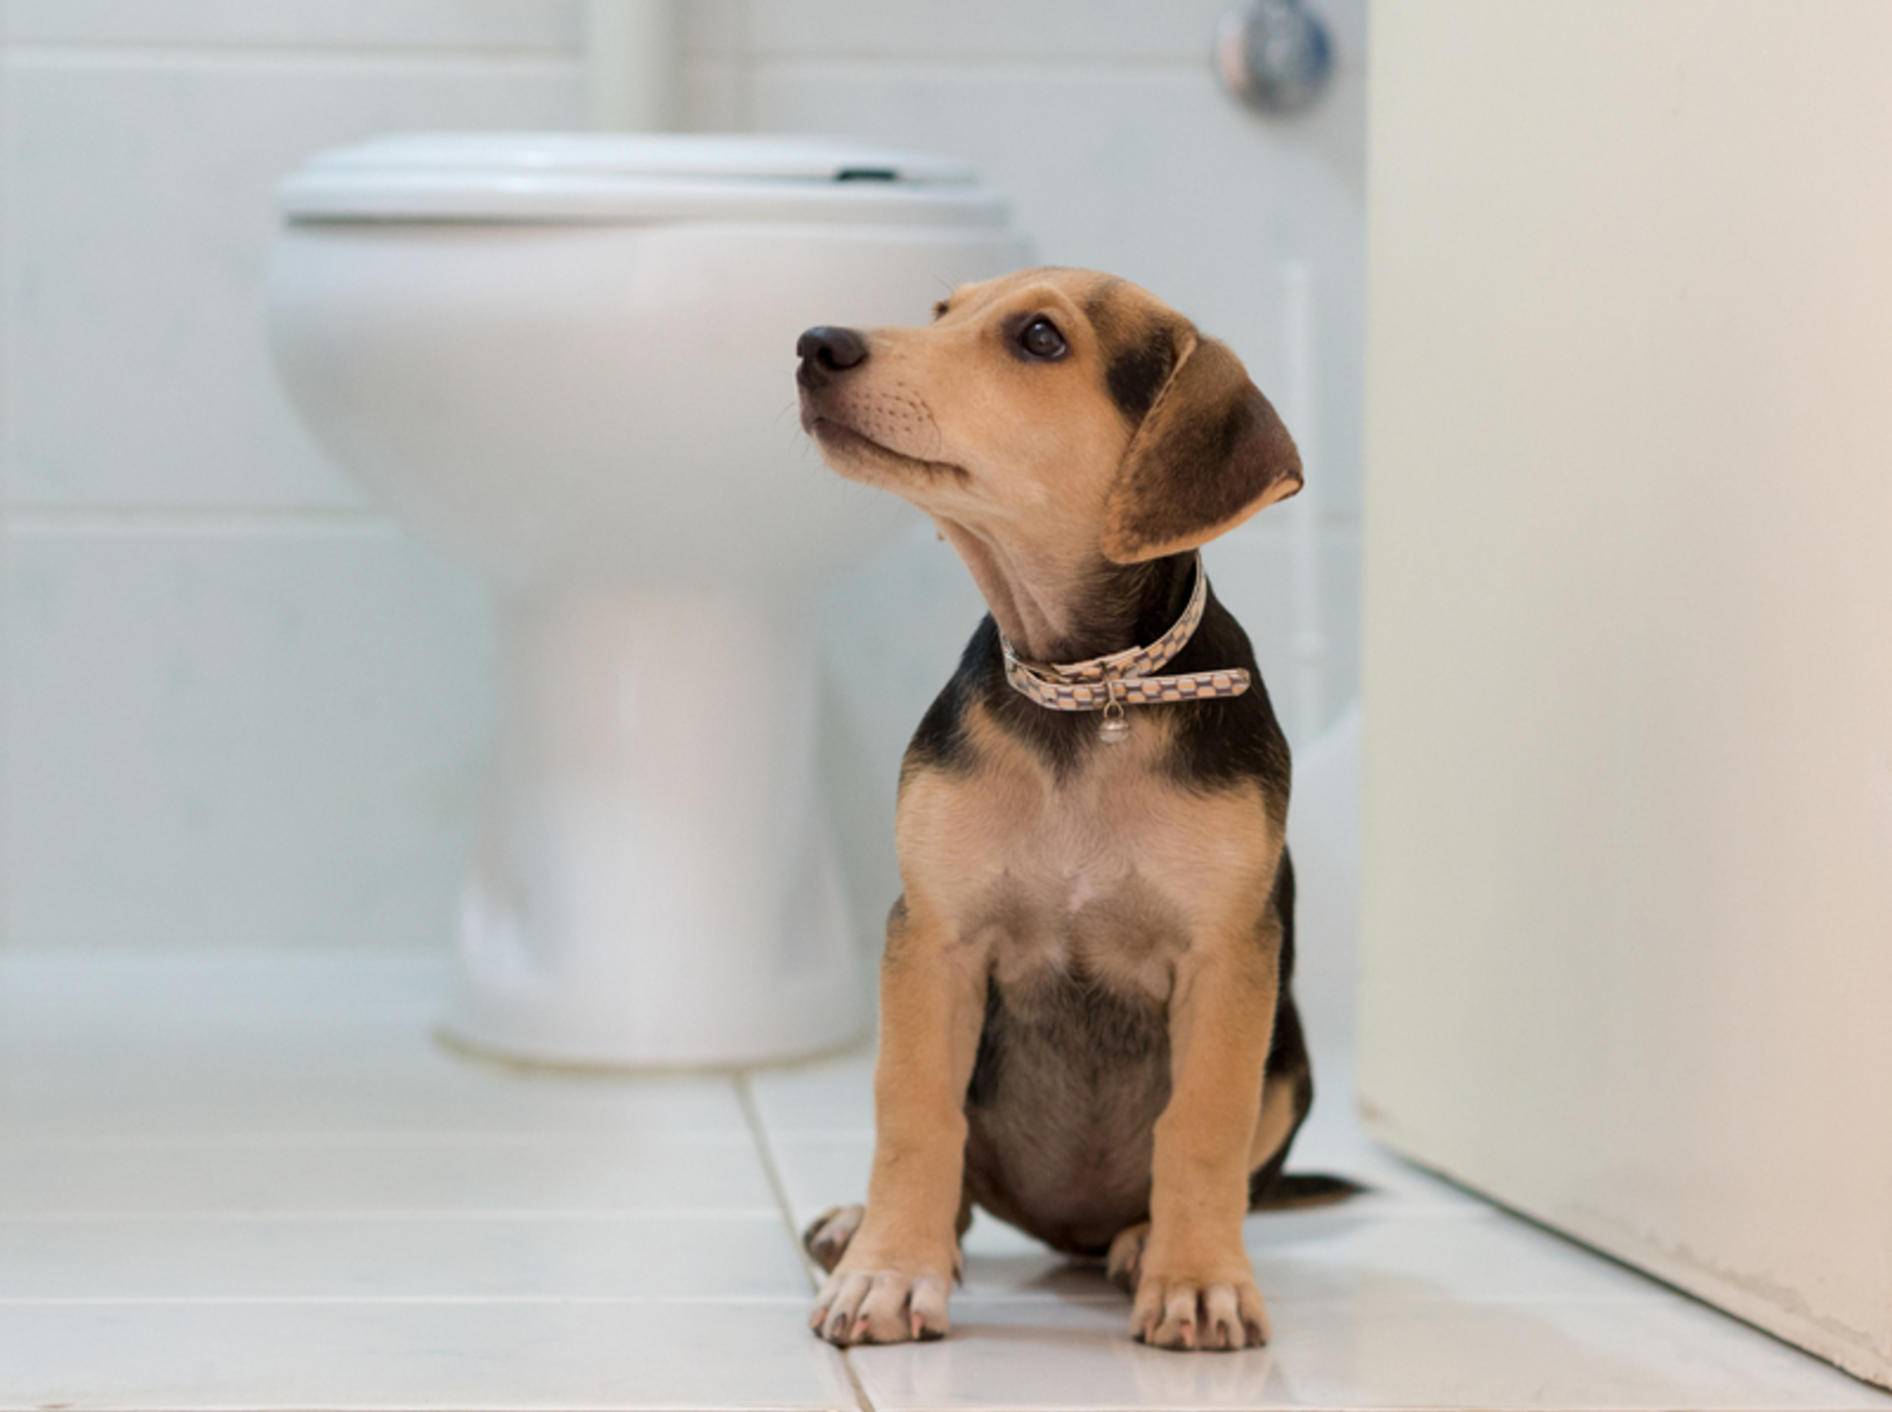 Die Vorliebe für das Toilettenwasser kann Hund zum Verhängnis werden Shutterstock / Gorsky Roman